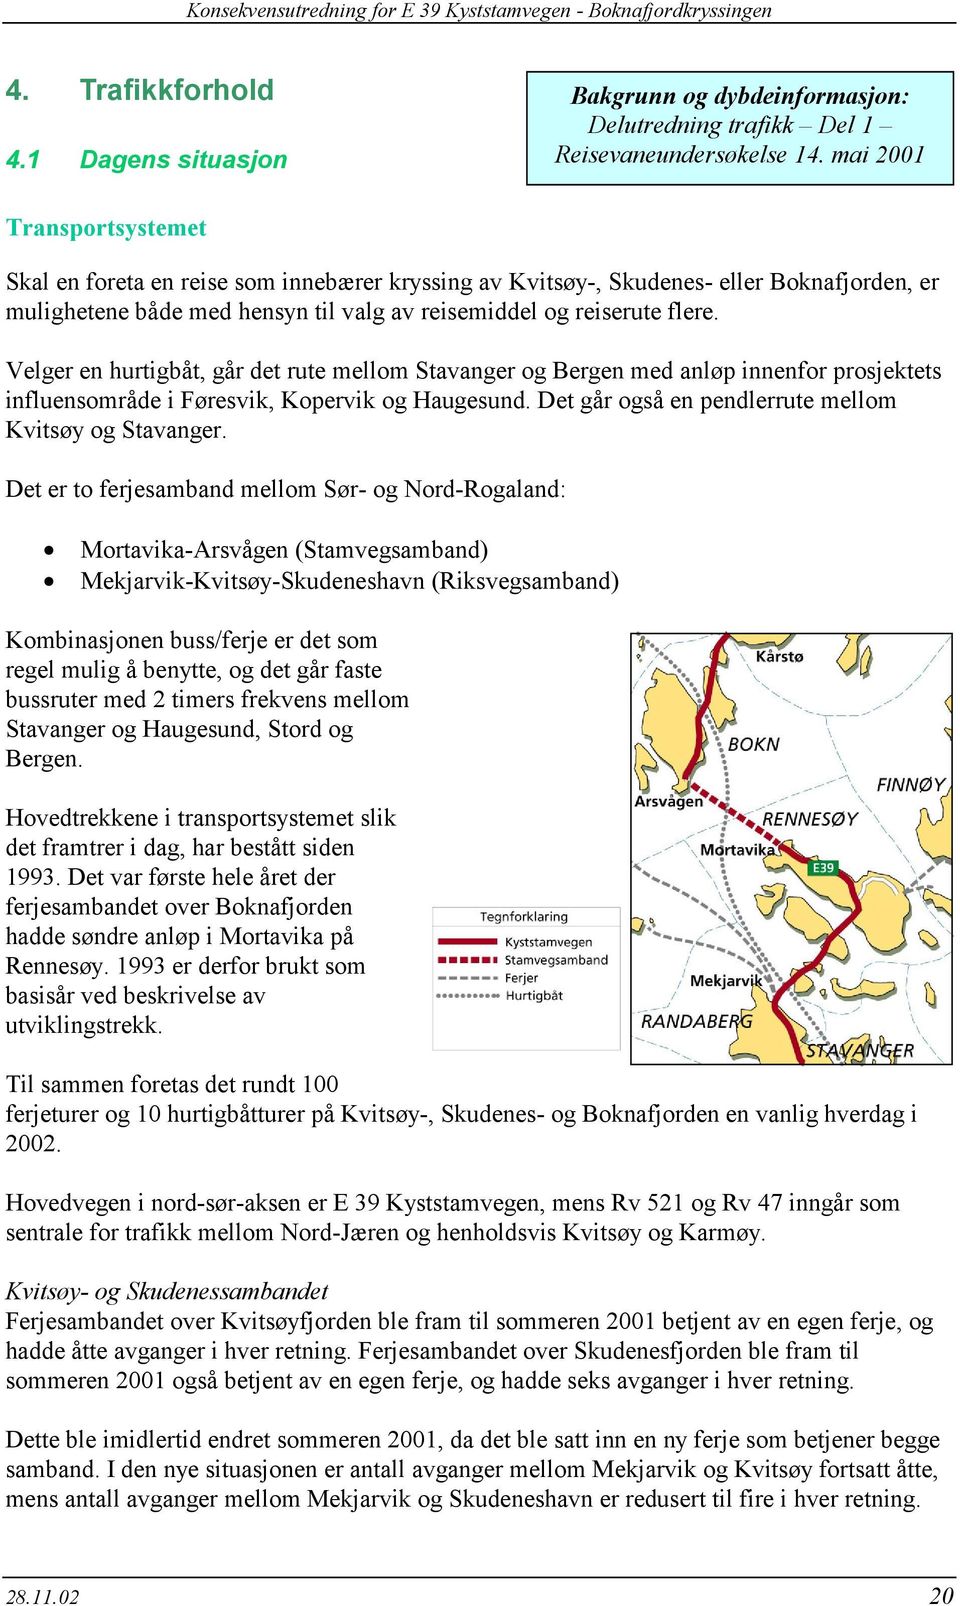 Velger en hurtigbåt, går det rute mellom Stavanger og Bergen med anløp innenfor prosjektets influensområde i Føresvik, Kopervik og Haugesund. Det går også en pendlerrute mellom Kvitsøy og Stavanger.